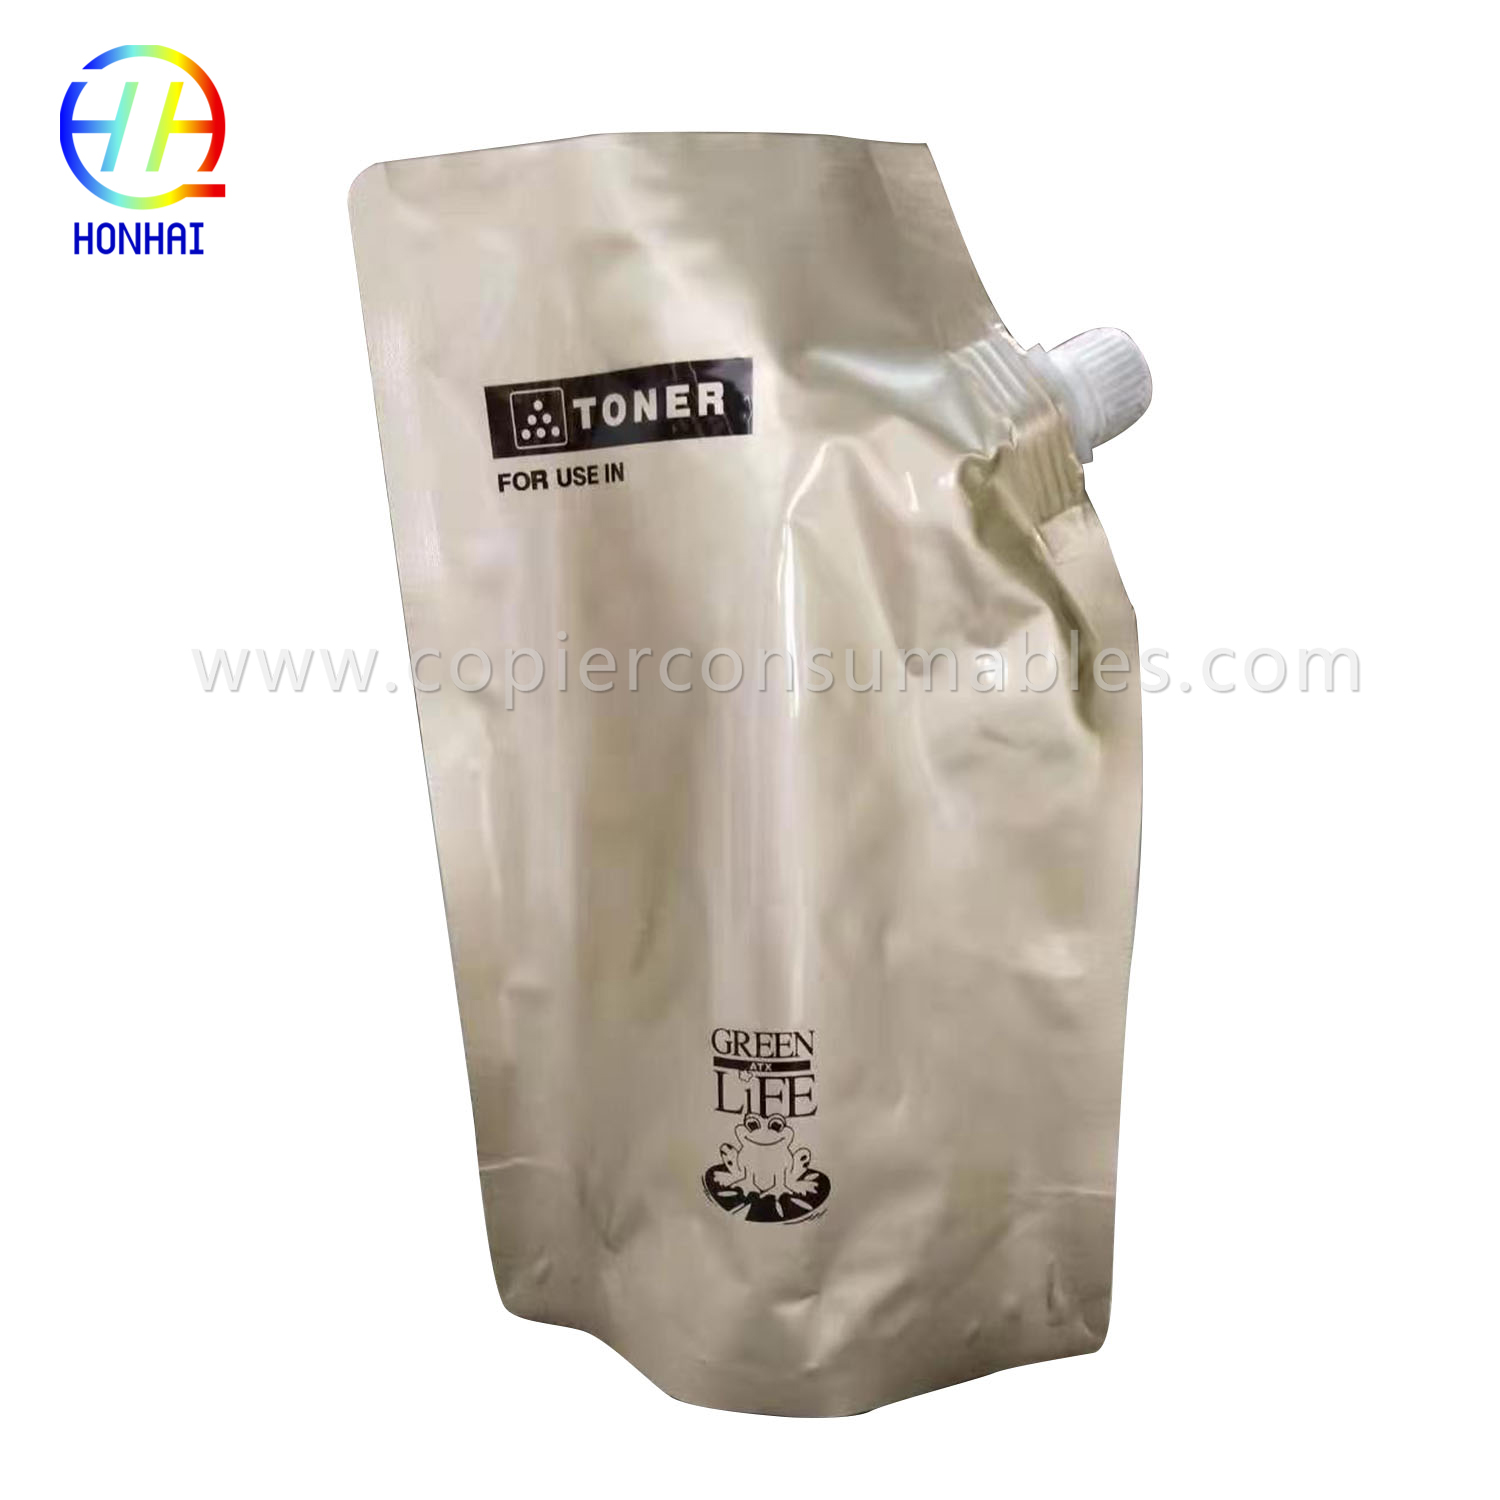 Toner Powder for Kyocera Km8030 5035 5050